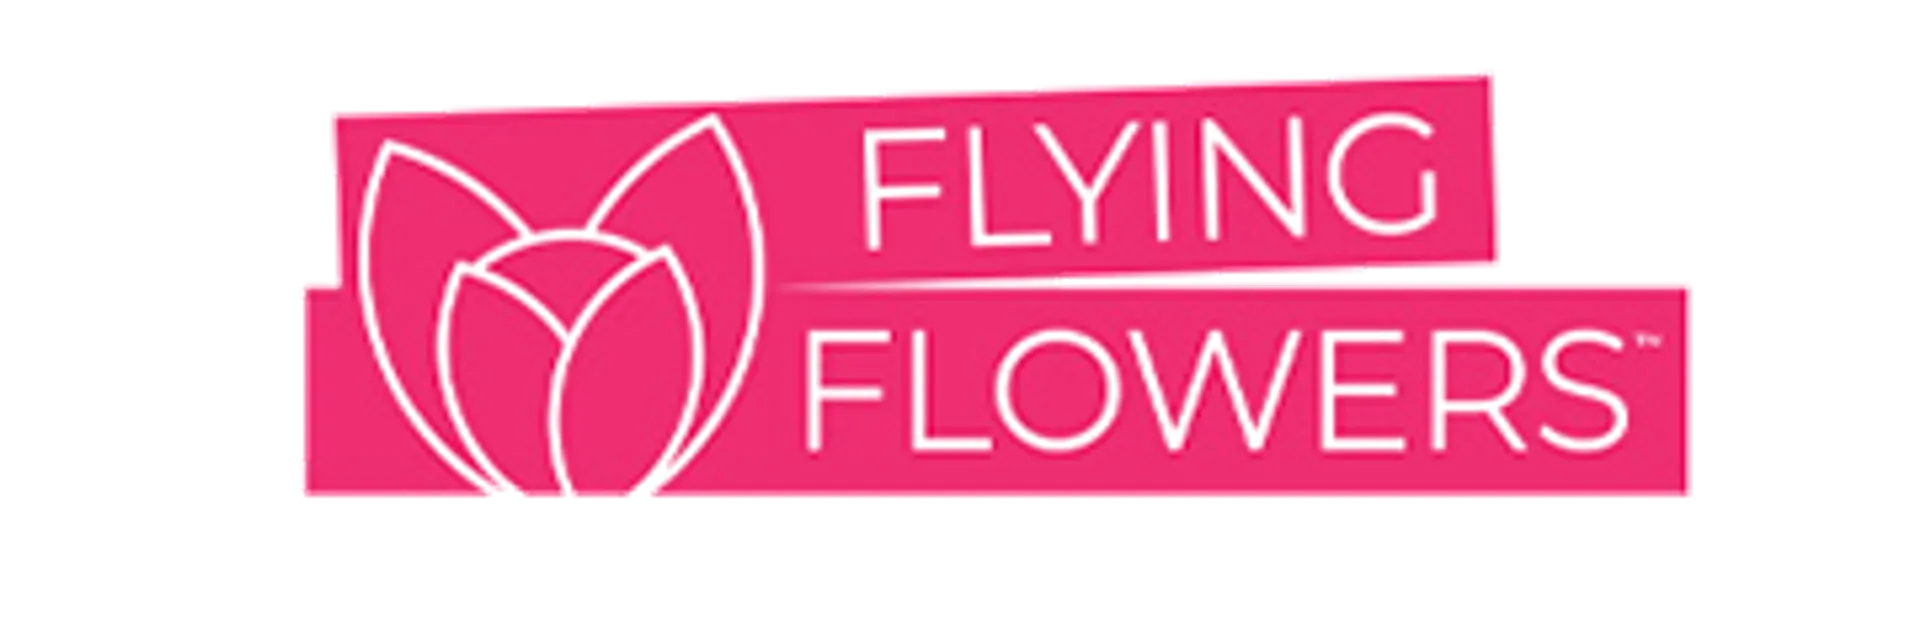 FLYING FLOWERS logo